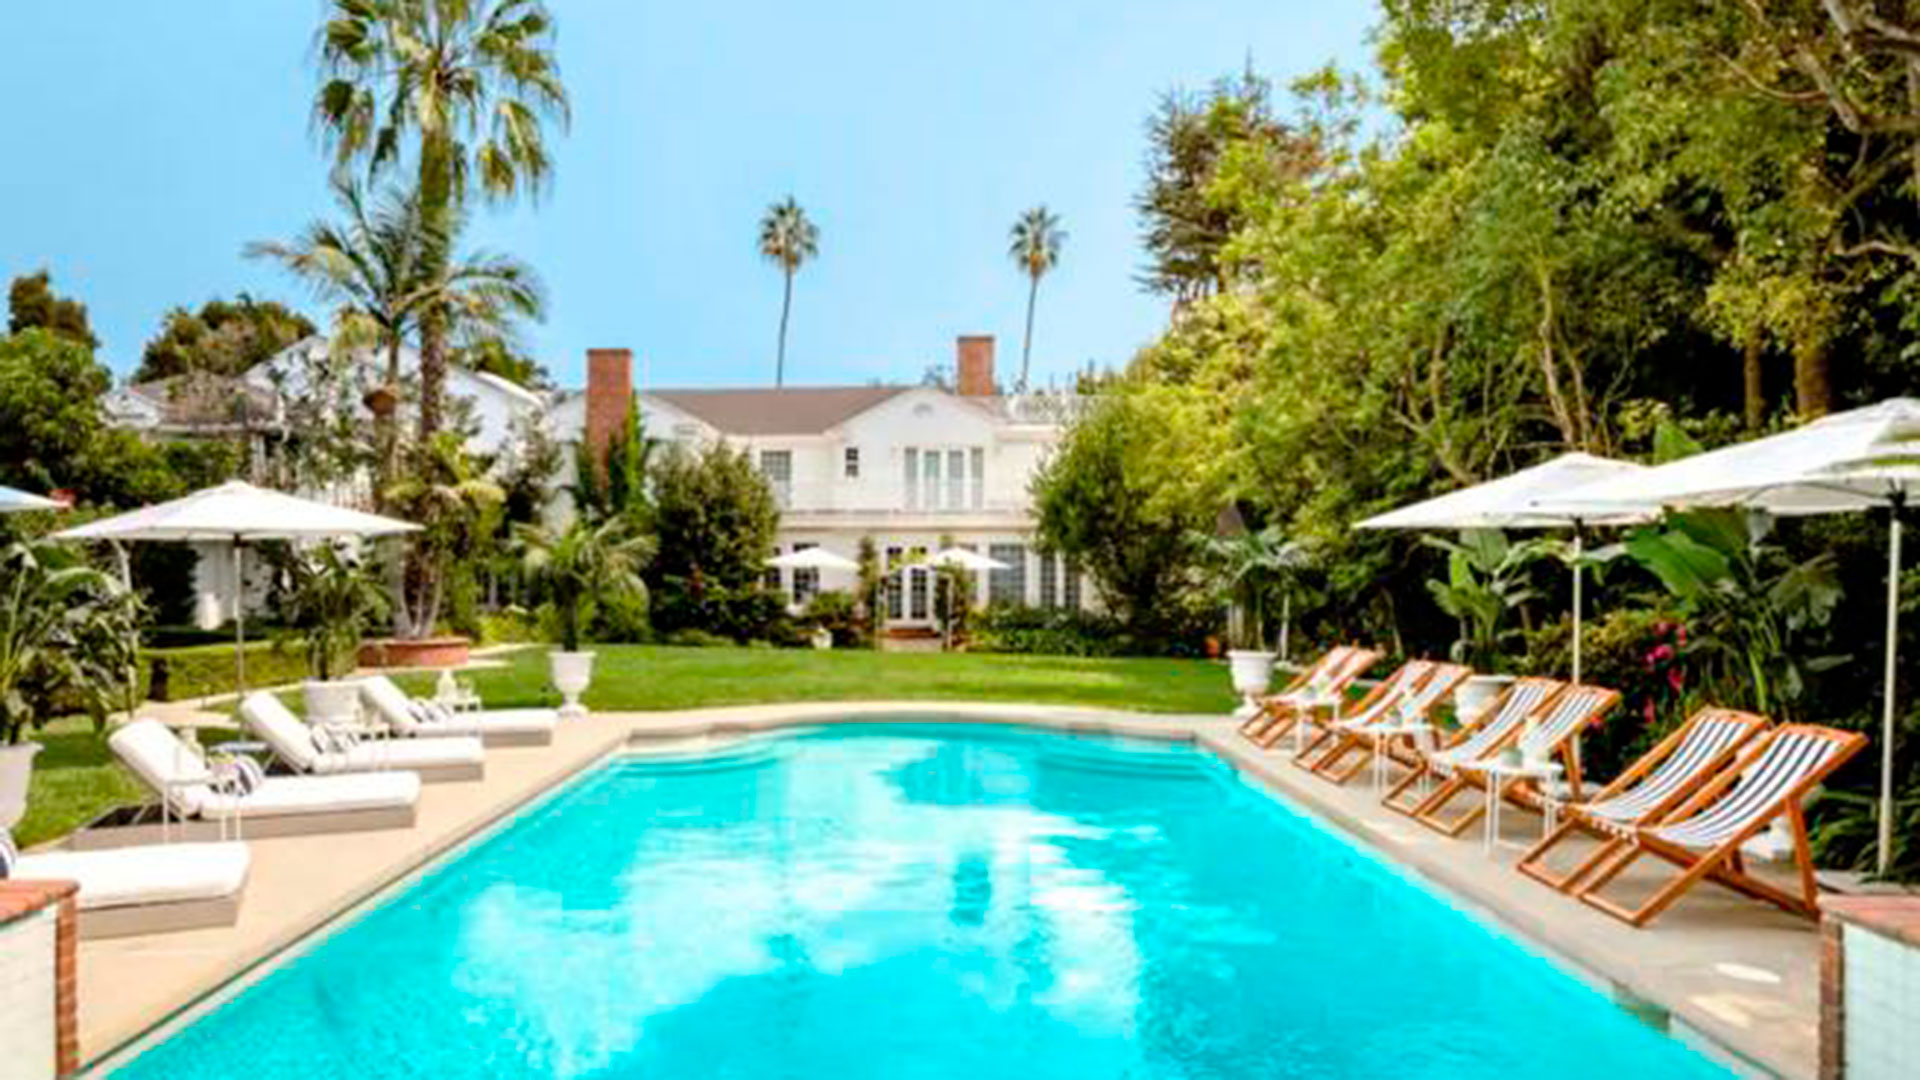 La piscina de la casa donde se filmó la serie El Príncipe de Bel-Air o del Rap, está en el distrito californiano de distrito de Brentwood